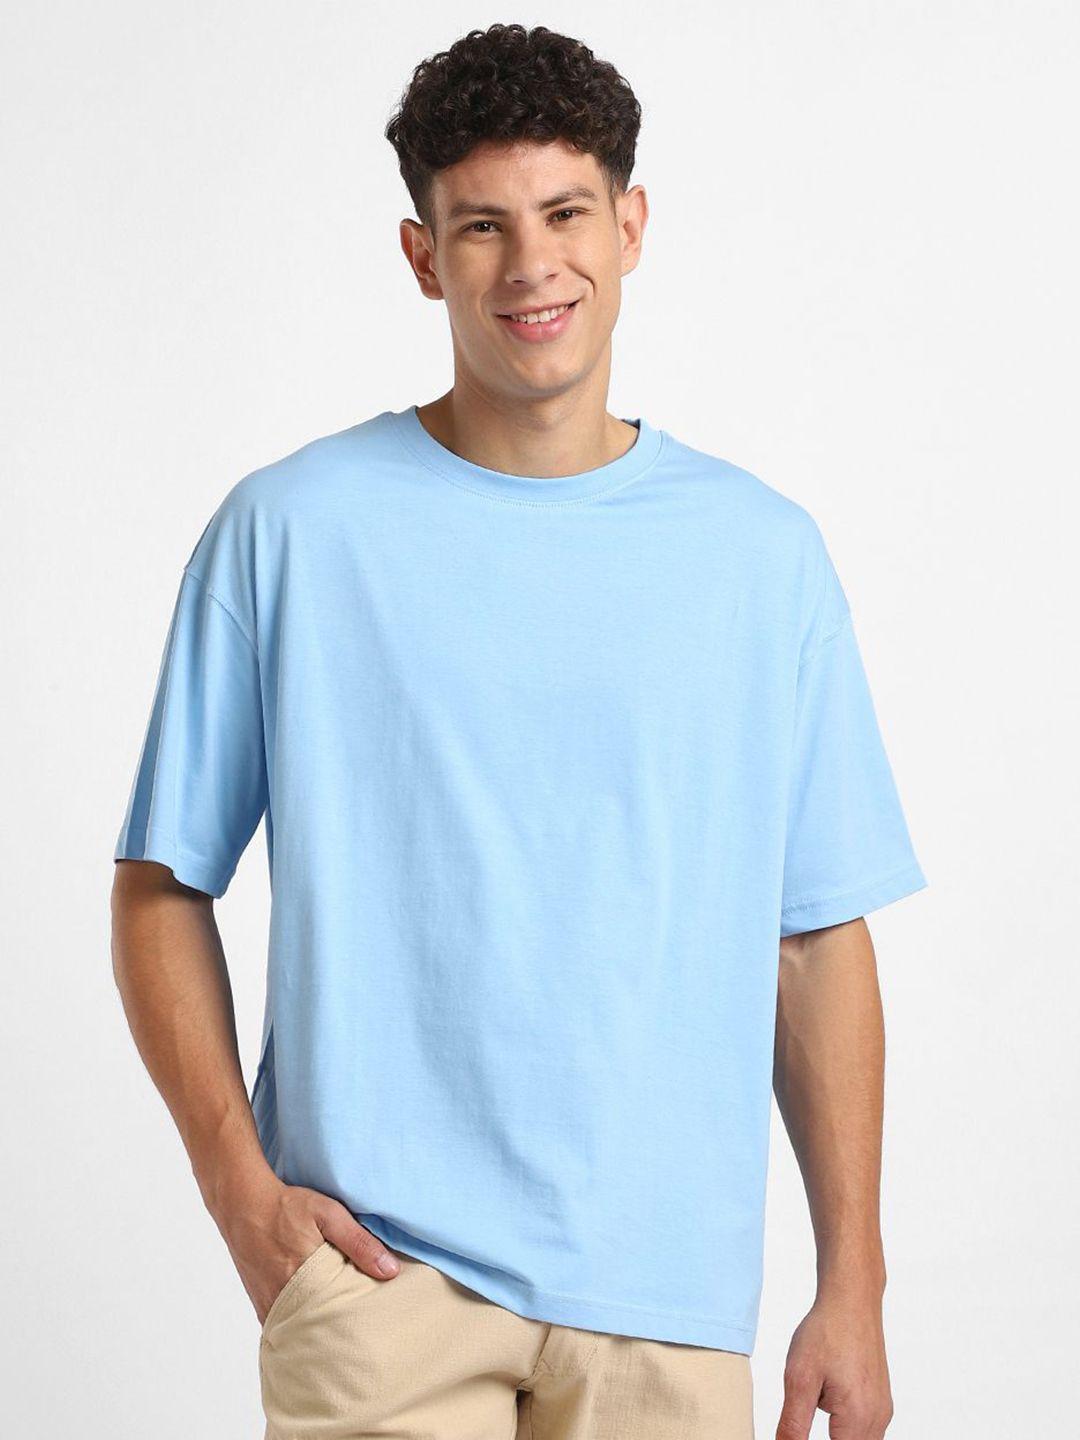 nobero round neck short sleeves oversized cotton t-shirt